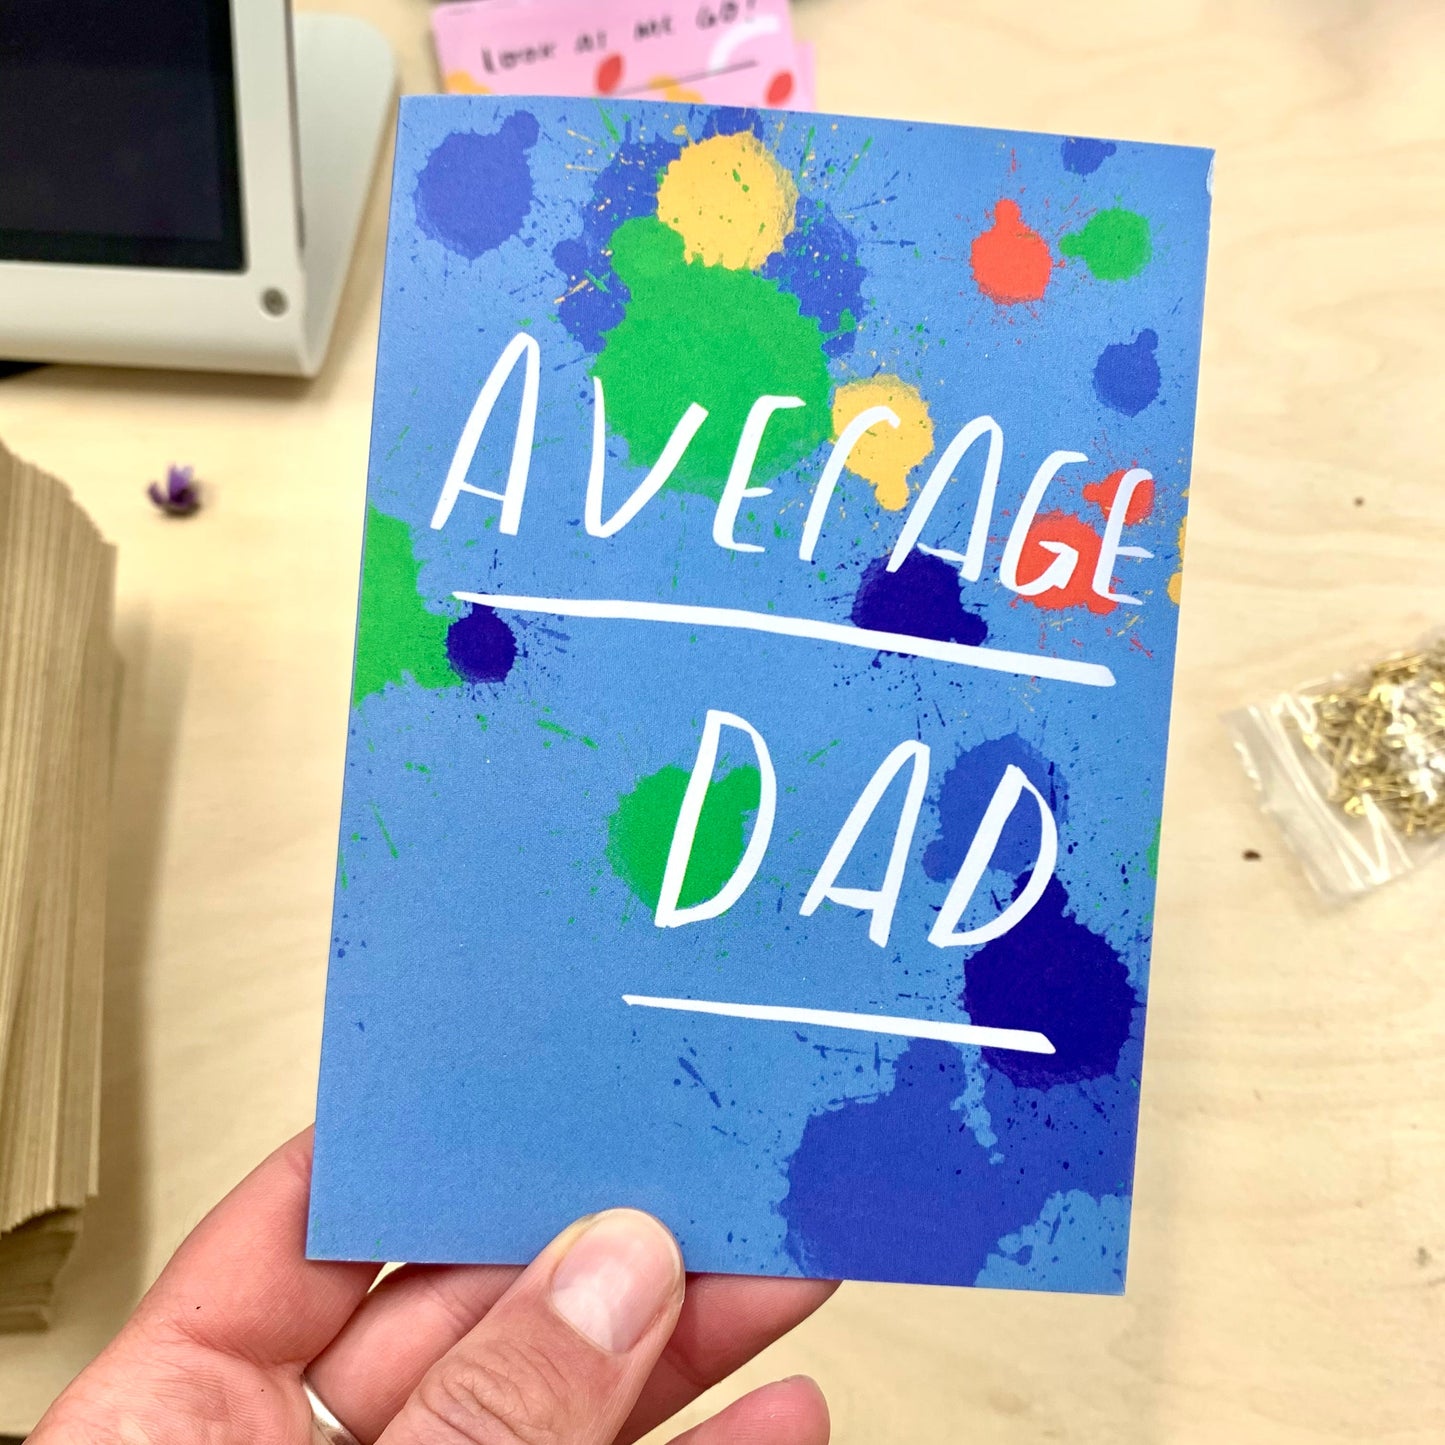 Average Dad greeting card